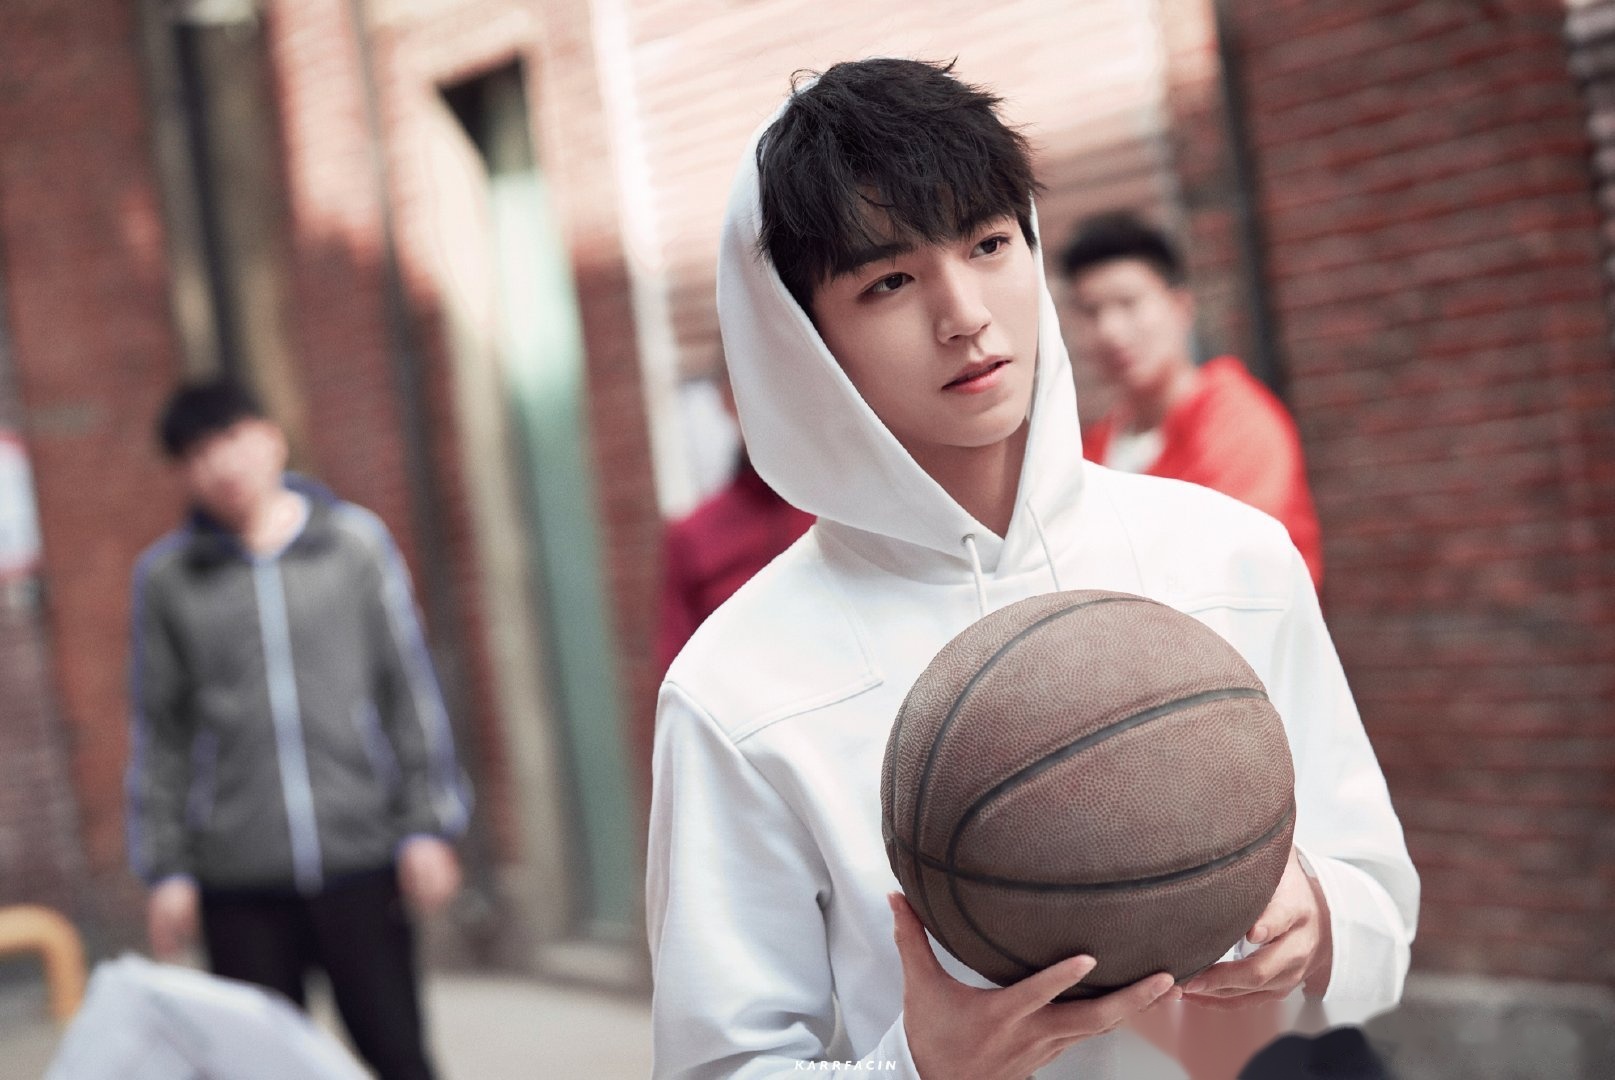 想看王俊凯打篮球的样子,只有这些没看过呢